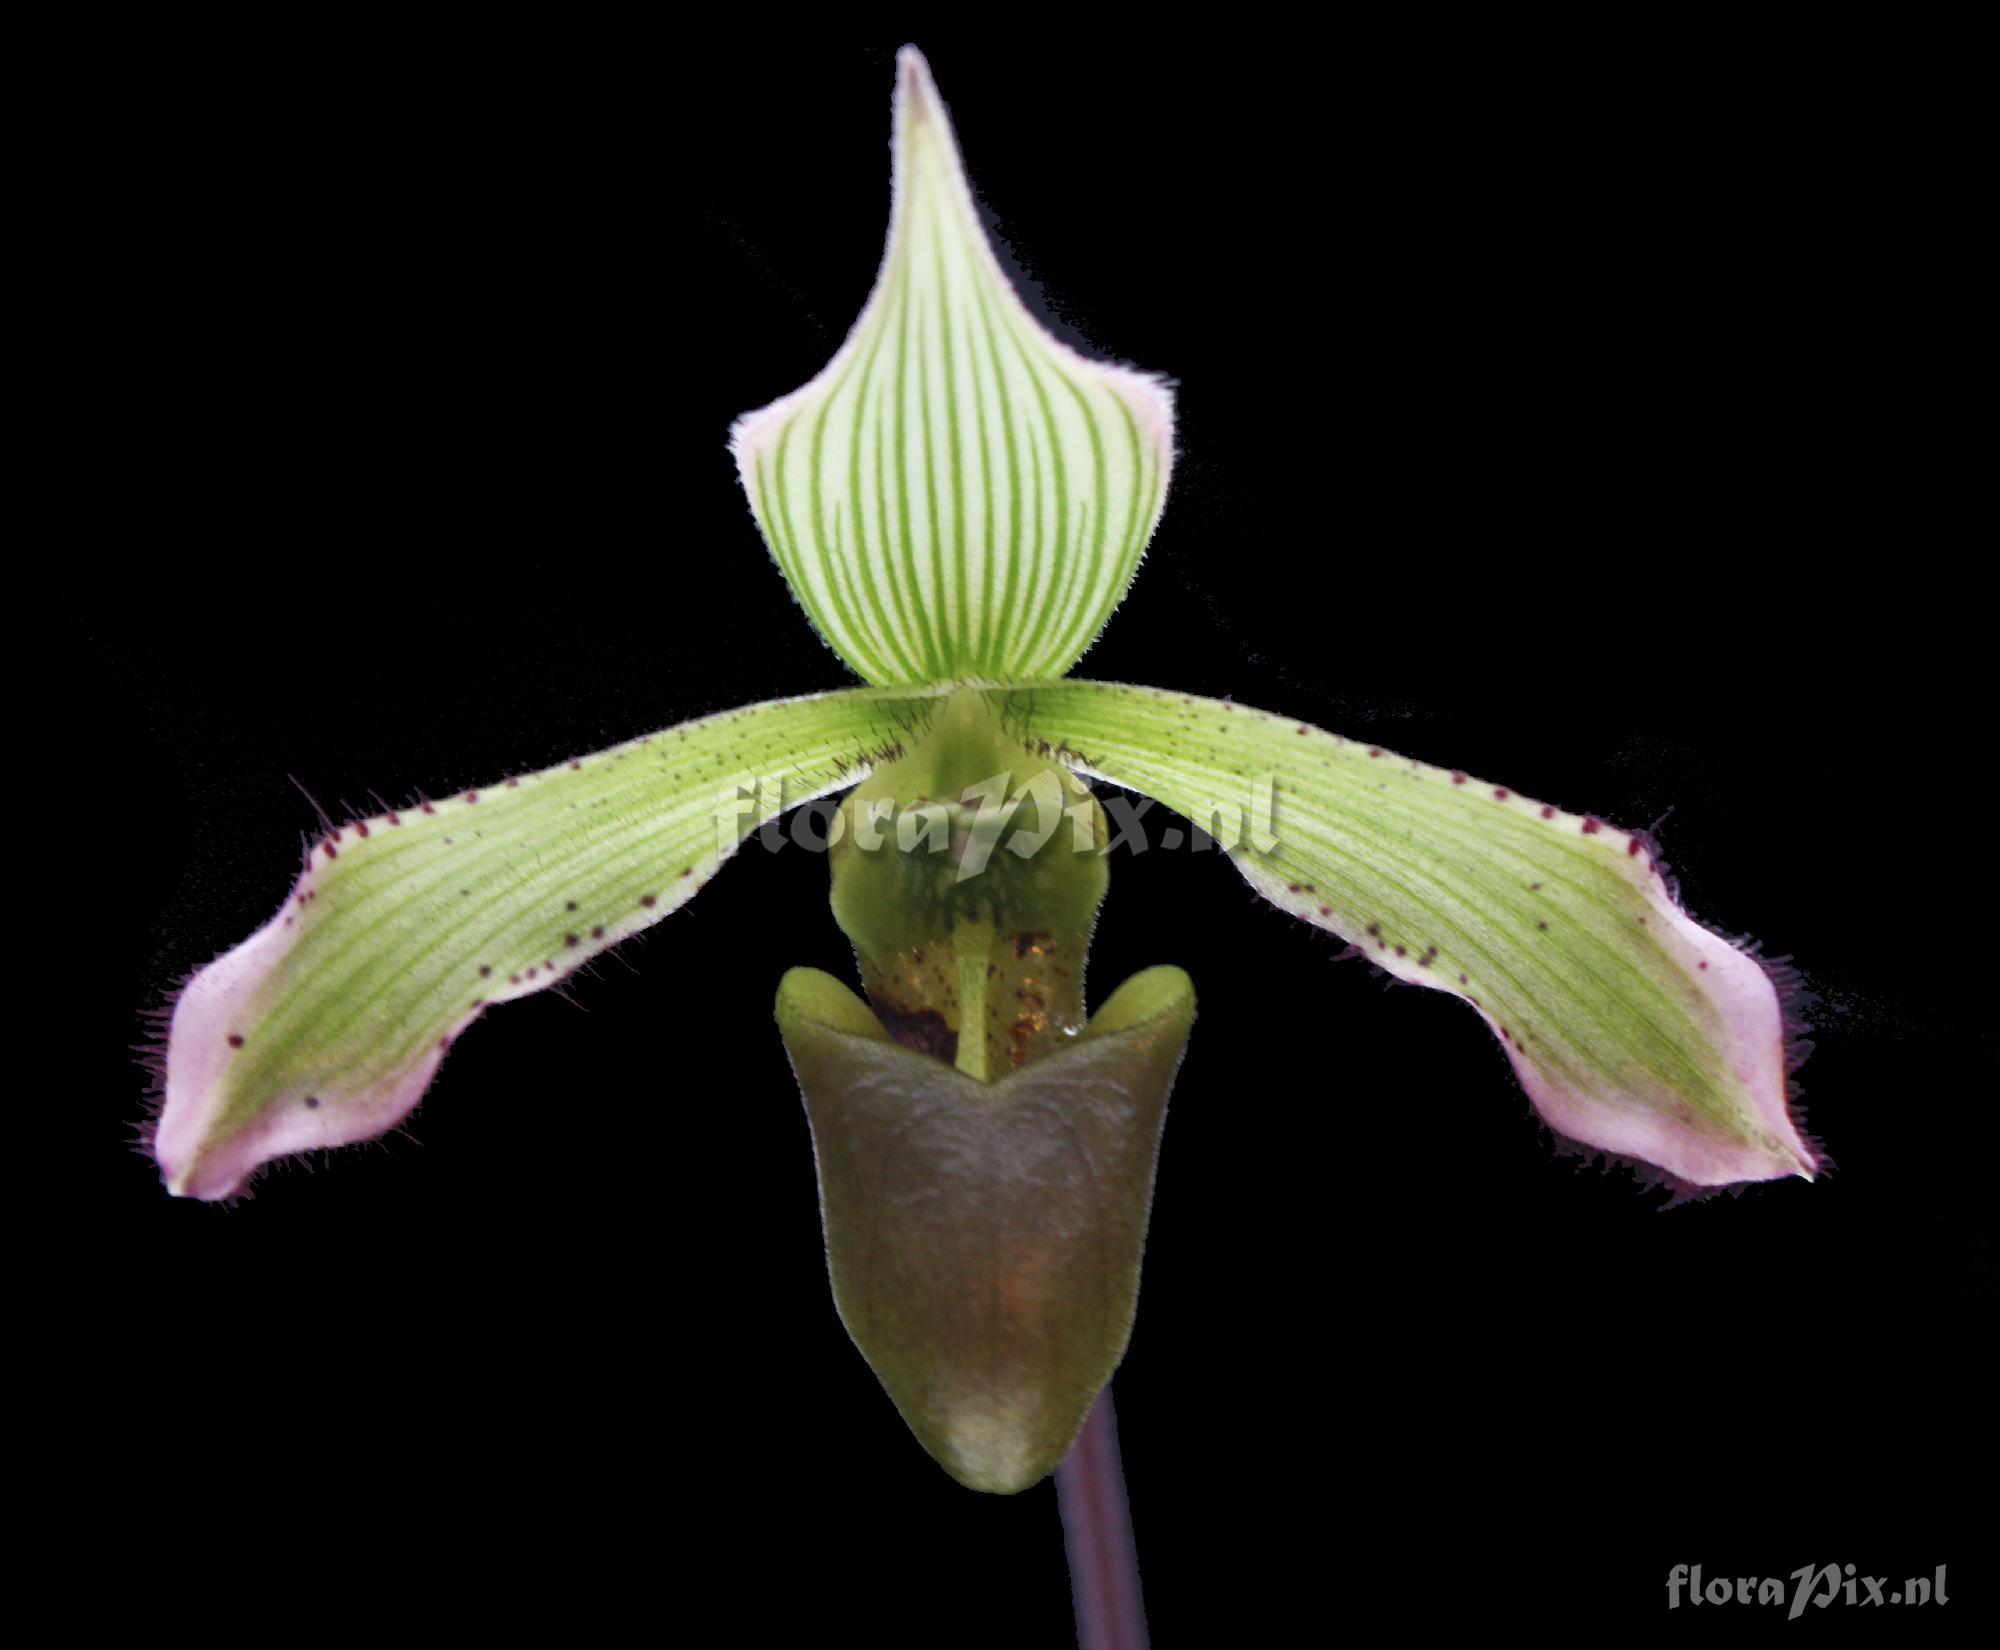 Paphiopedilum javanicum (Reinw. ex Blume) Pfitzer 